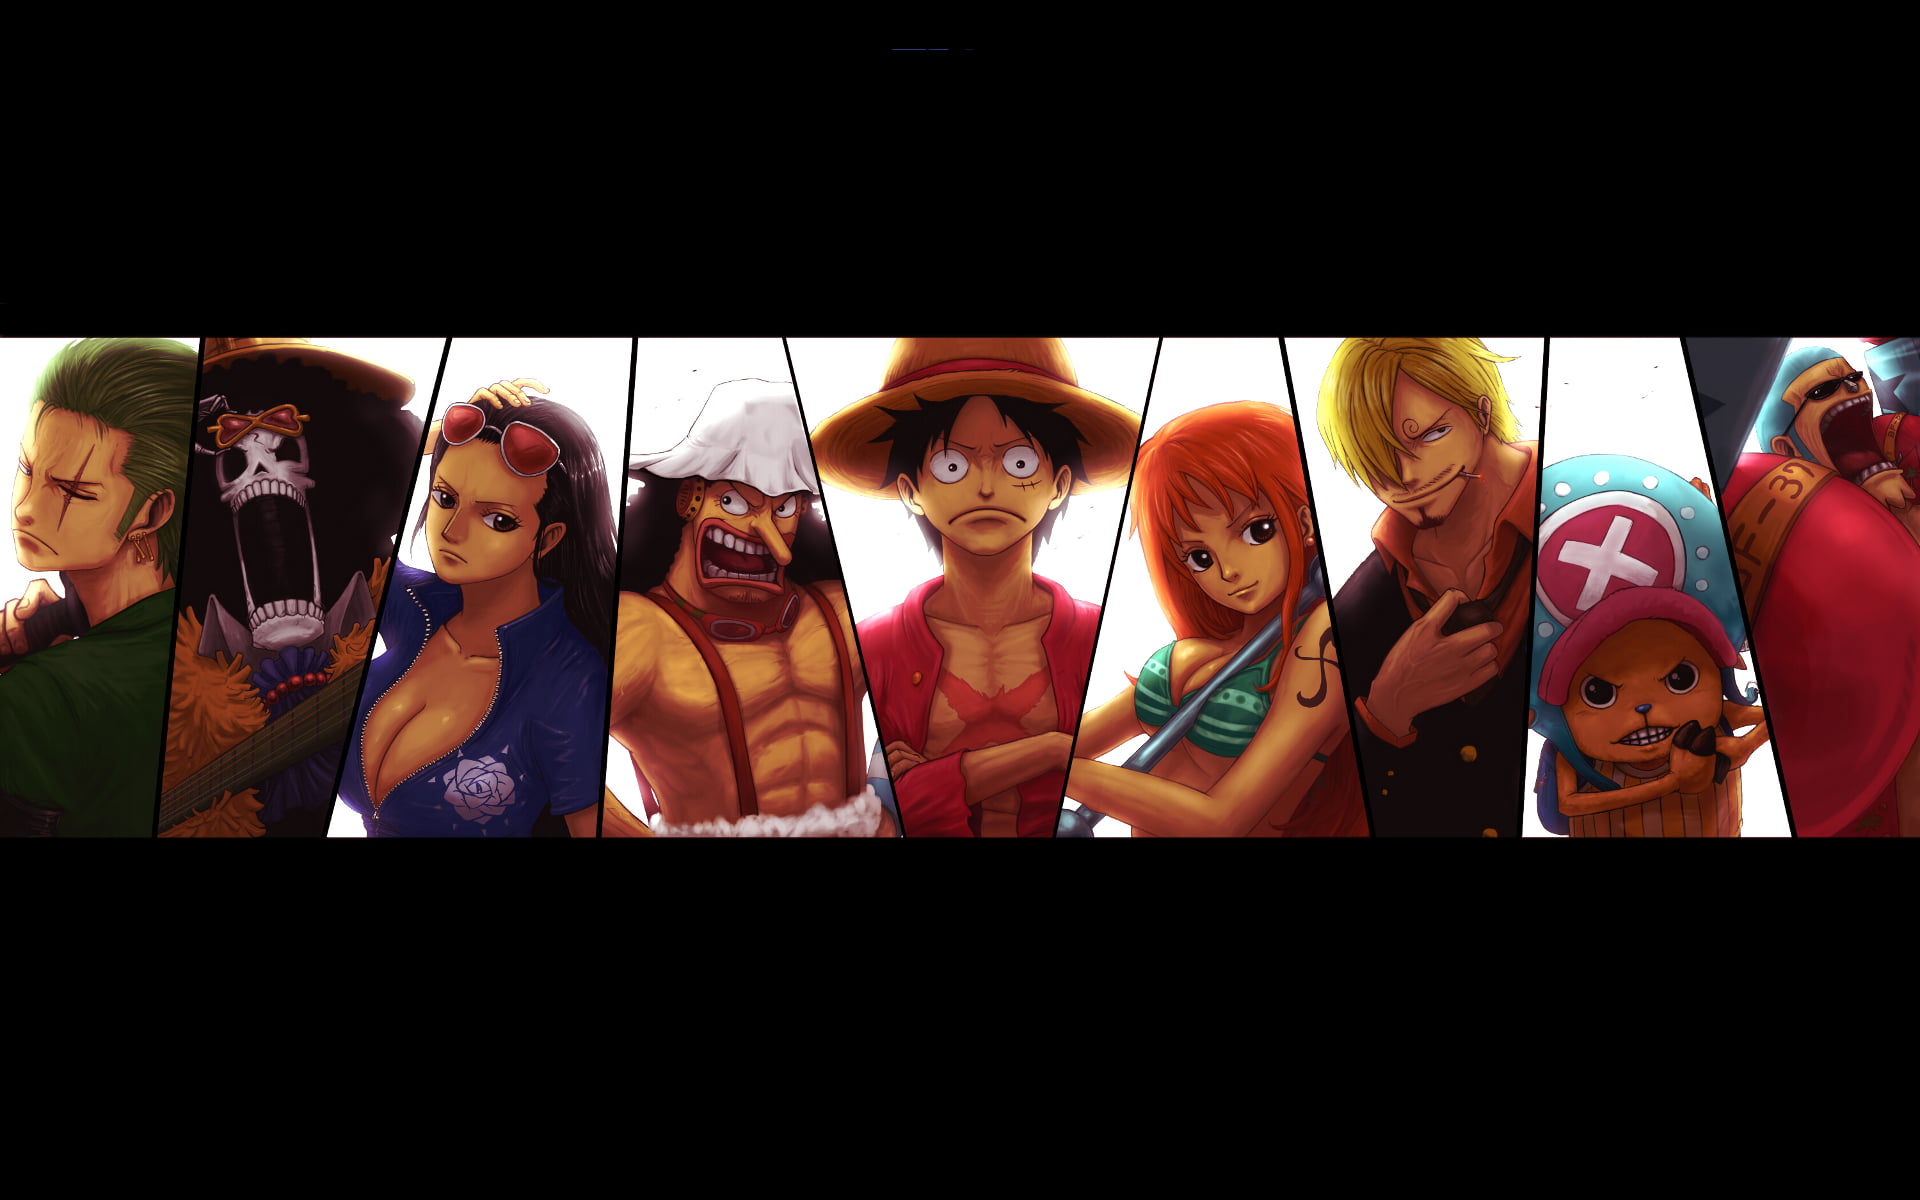 One Piece Posters: One piece - Trafalgar Law wanted poster Poster Anime  Poster RB0112 | Anime Poster